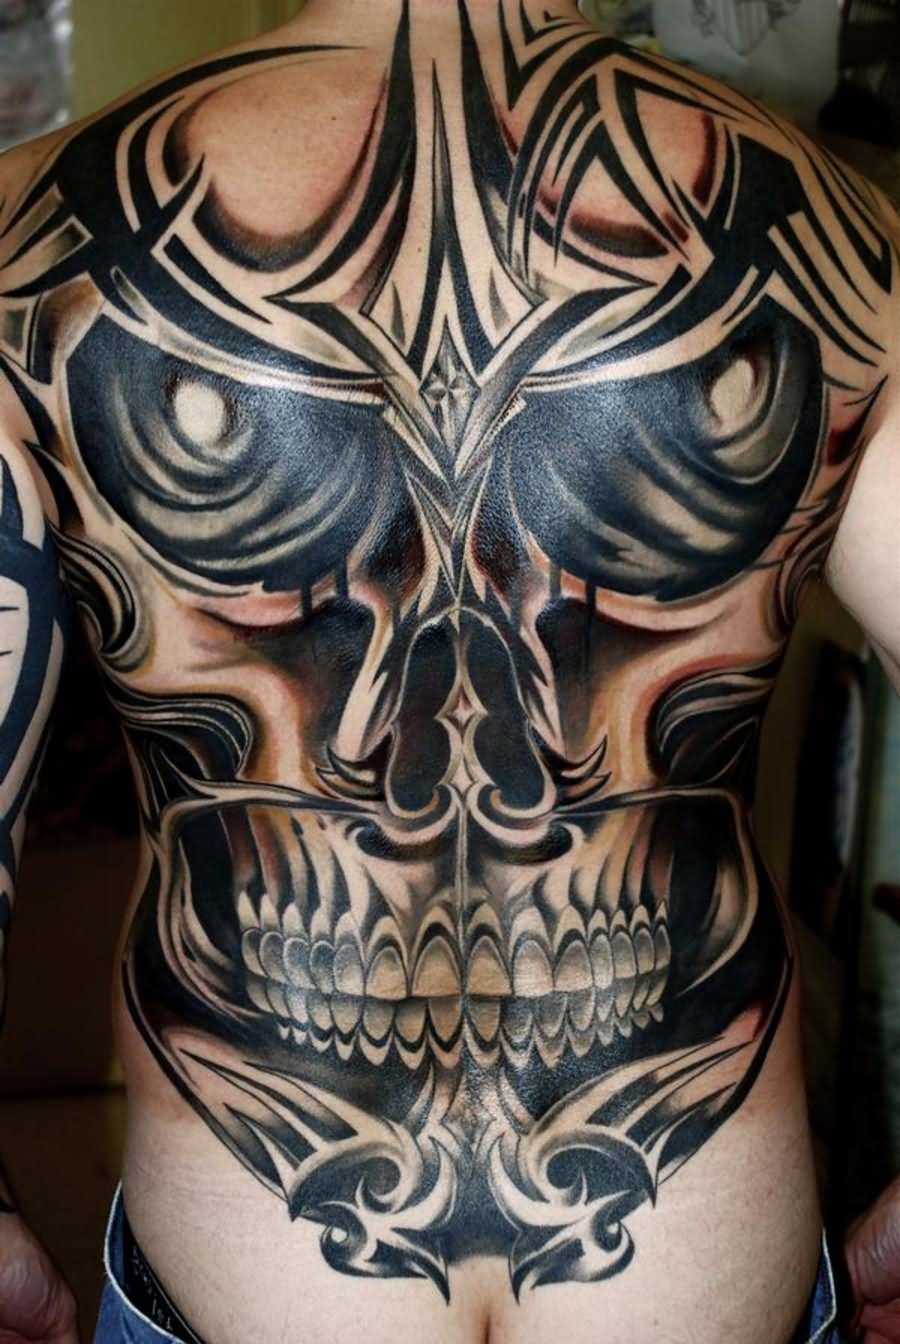 Tribal Skull Tattoo On Man Full Back